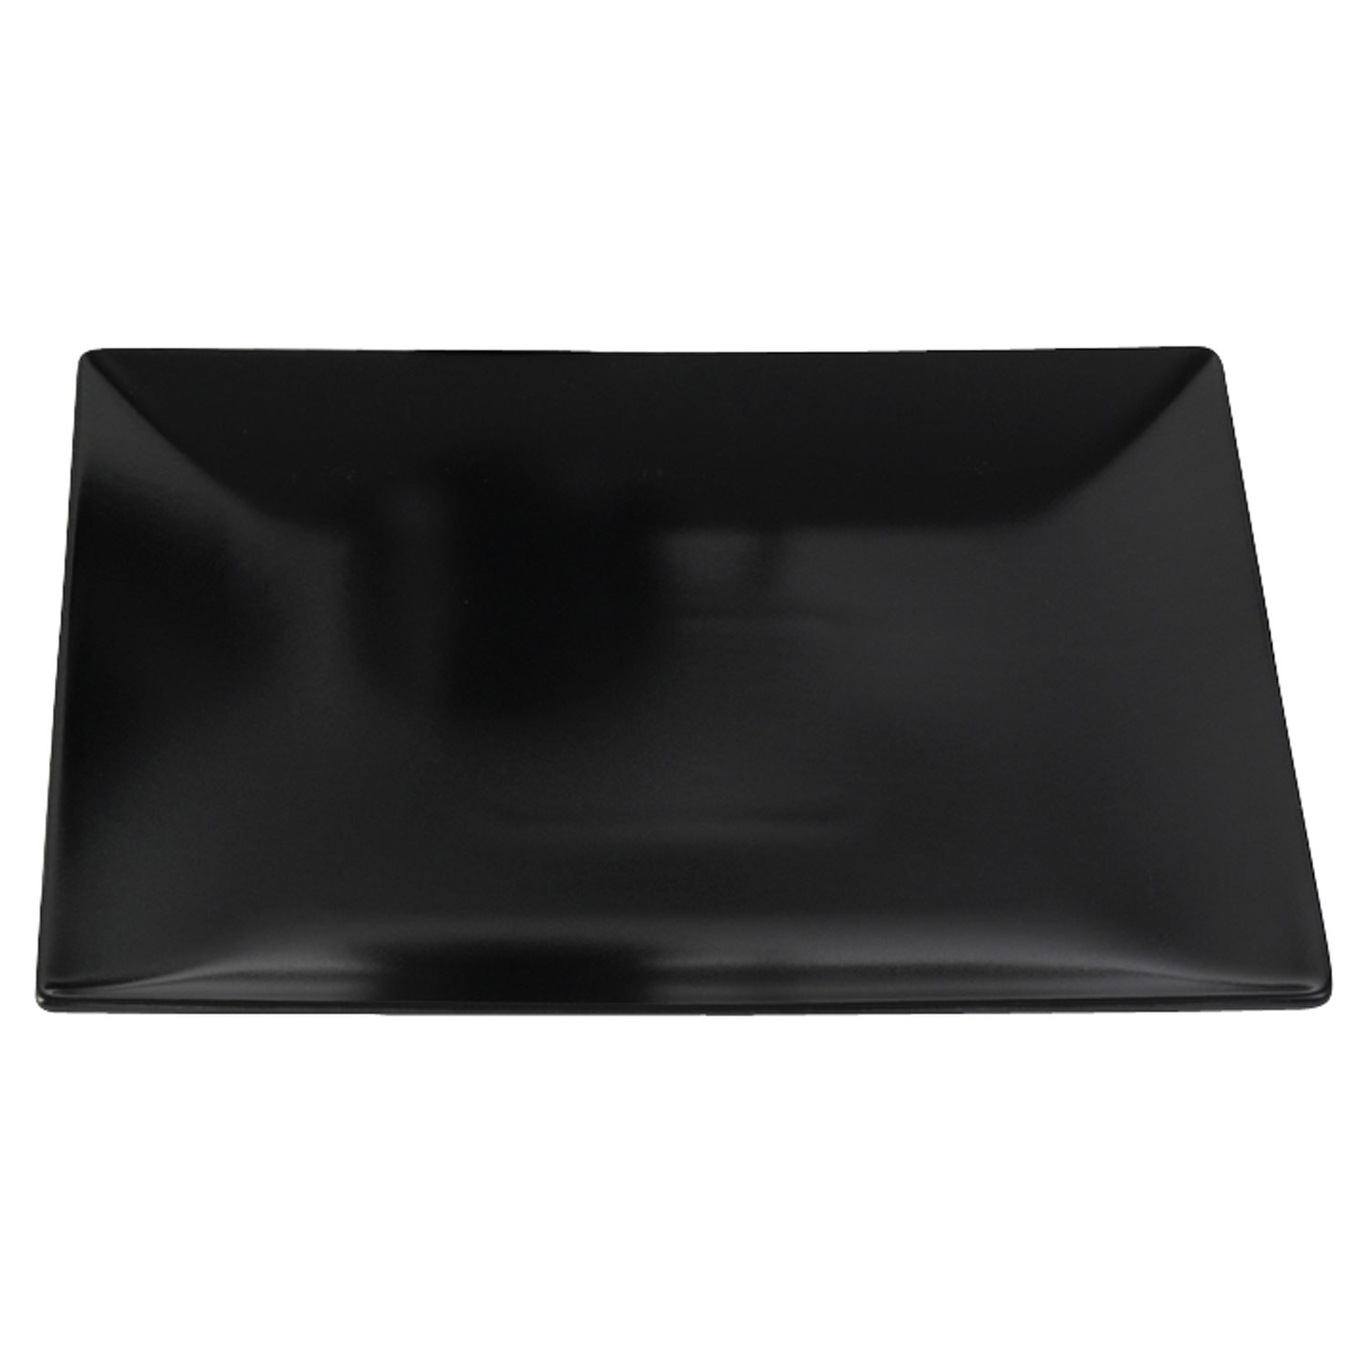 Quadro Plate 26x26 cm, Black